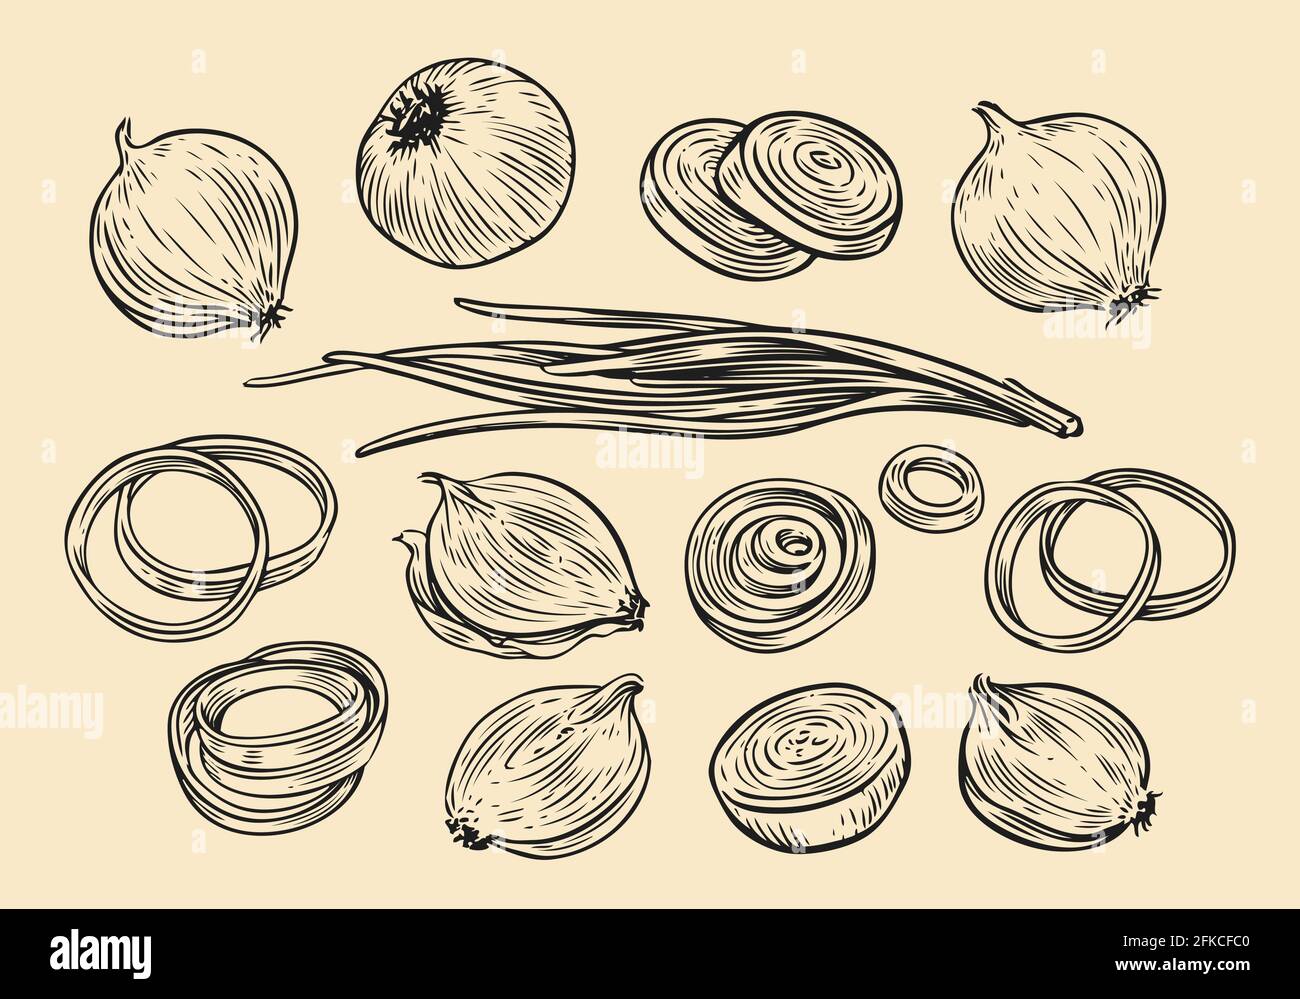 Zwiebelbirne und Ringe Skizze. Handgezeichnete Vektorgrafik für frisches Gemüse Stock Vektor